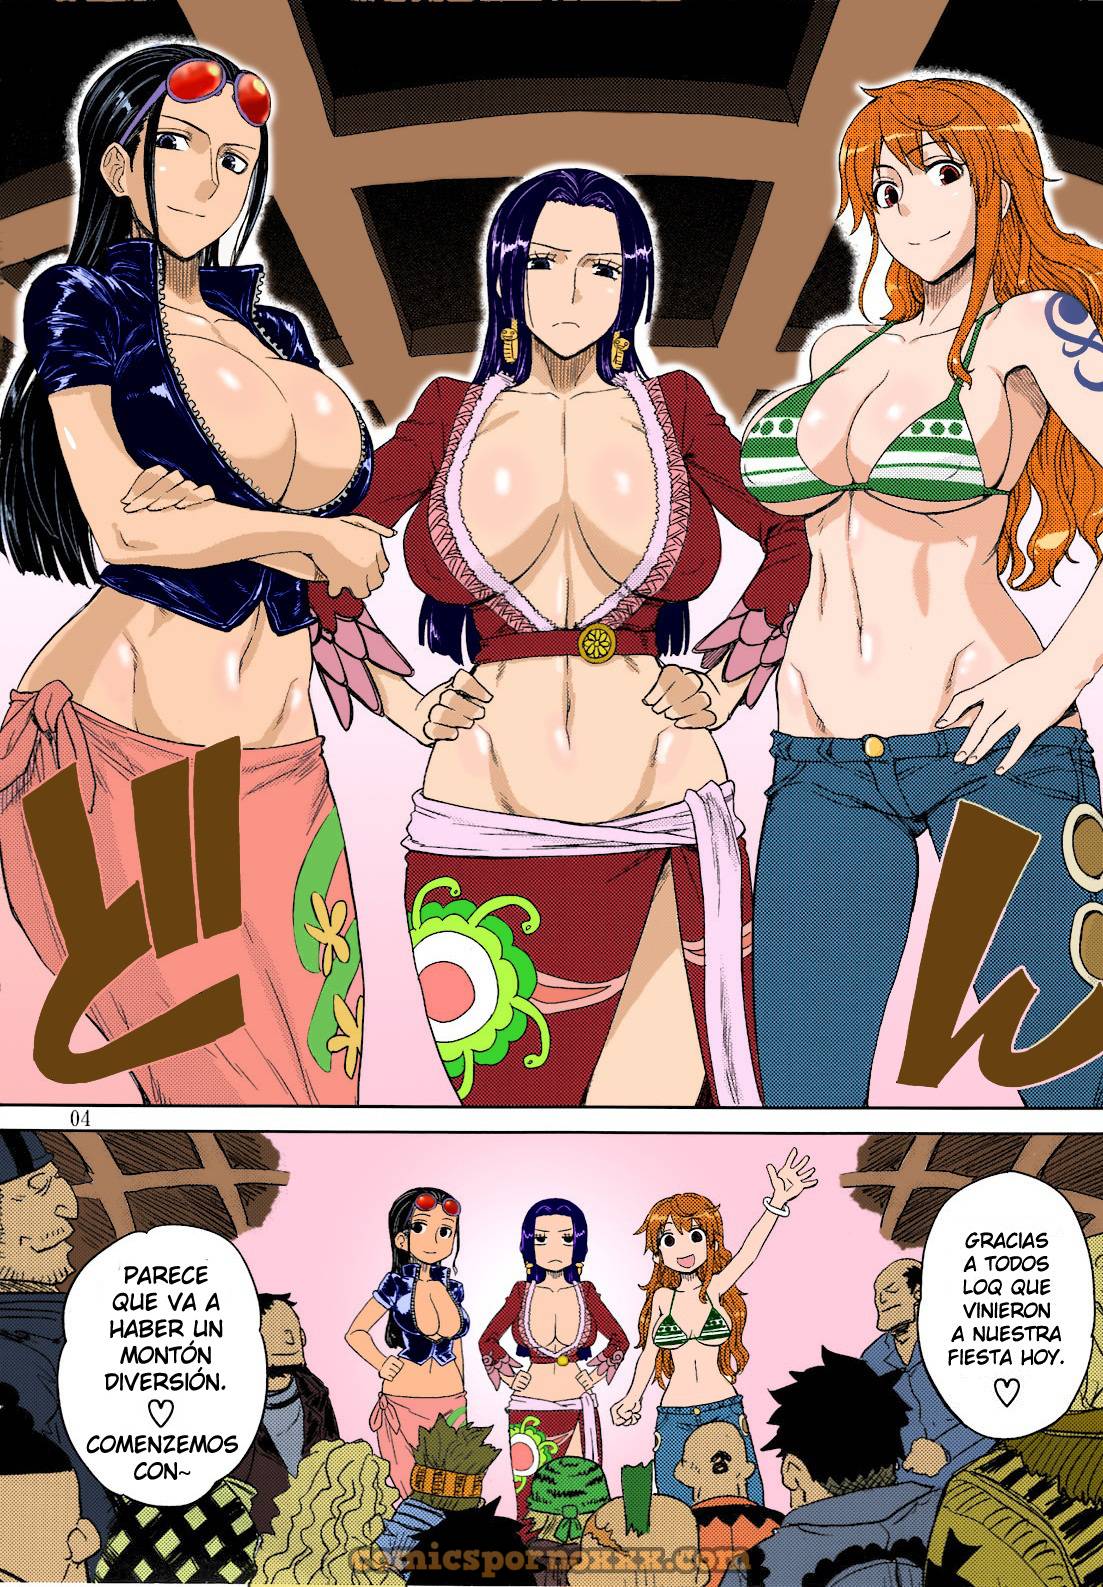 Mero Mero Girls New World - 2 - Comics Porno - Hentai Manga - Cartoon XXX